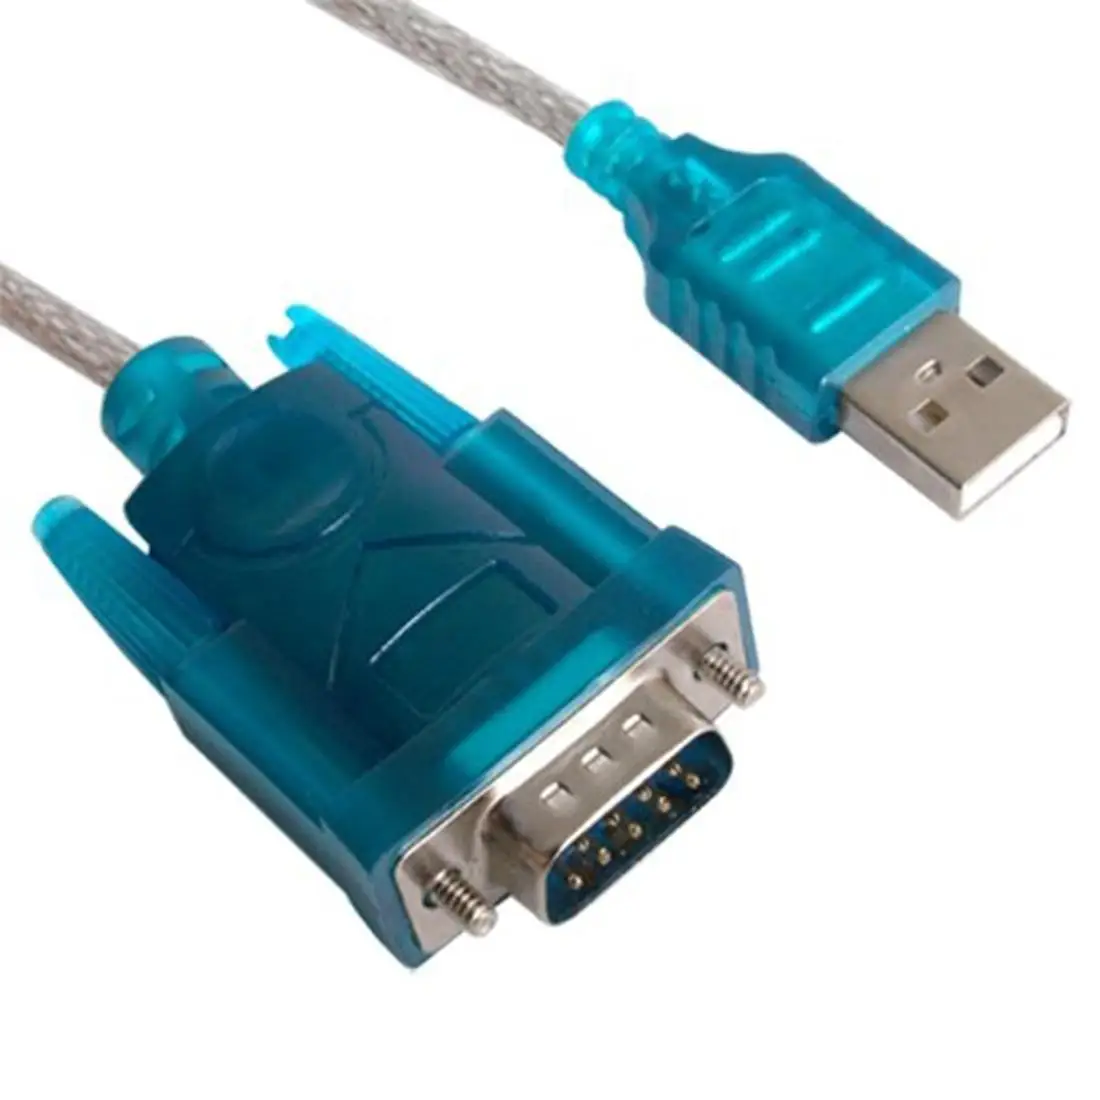 Купить переходник com com. USB to rs232. USB 2.0 to db9 rs232 9pin Port Converter. Преобразователь USB rs232. USB rs232 плата.